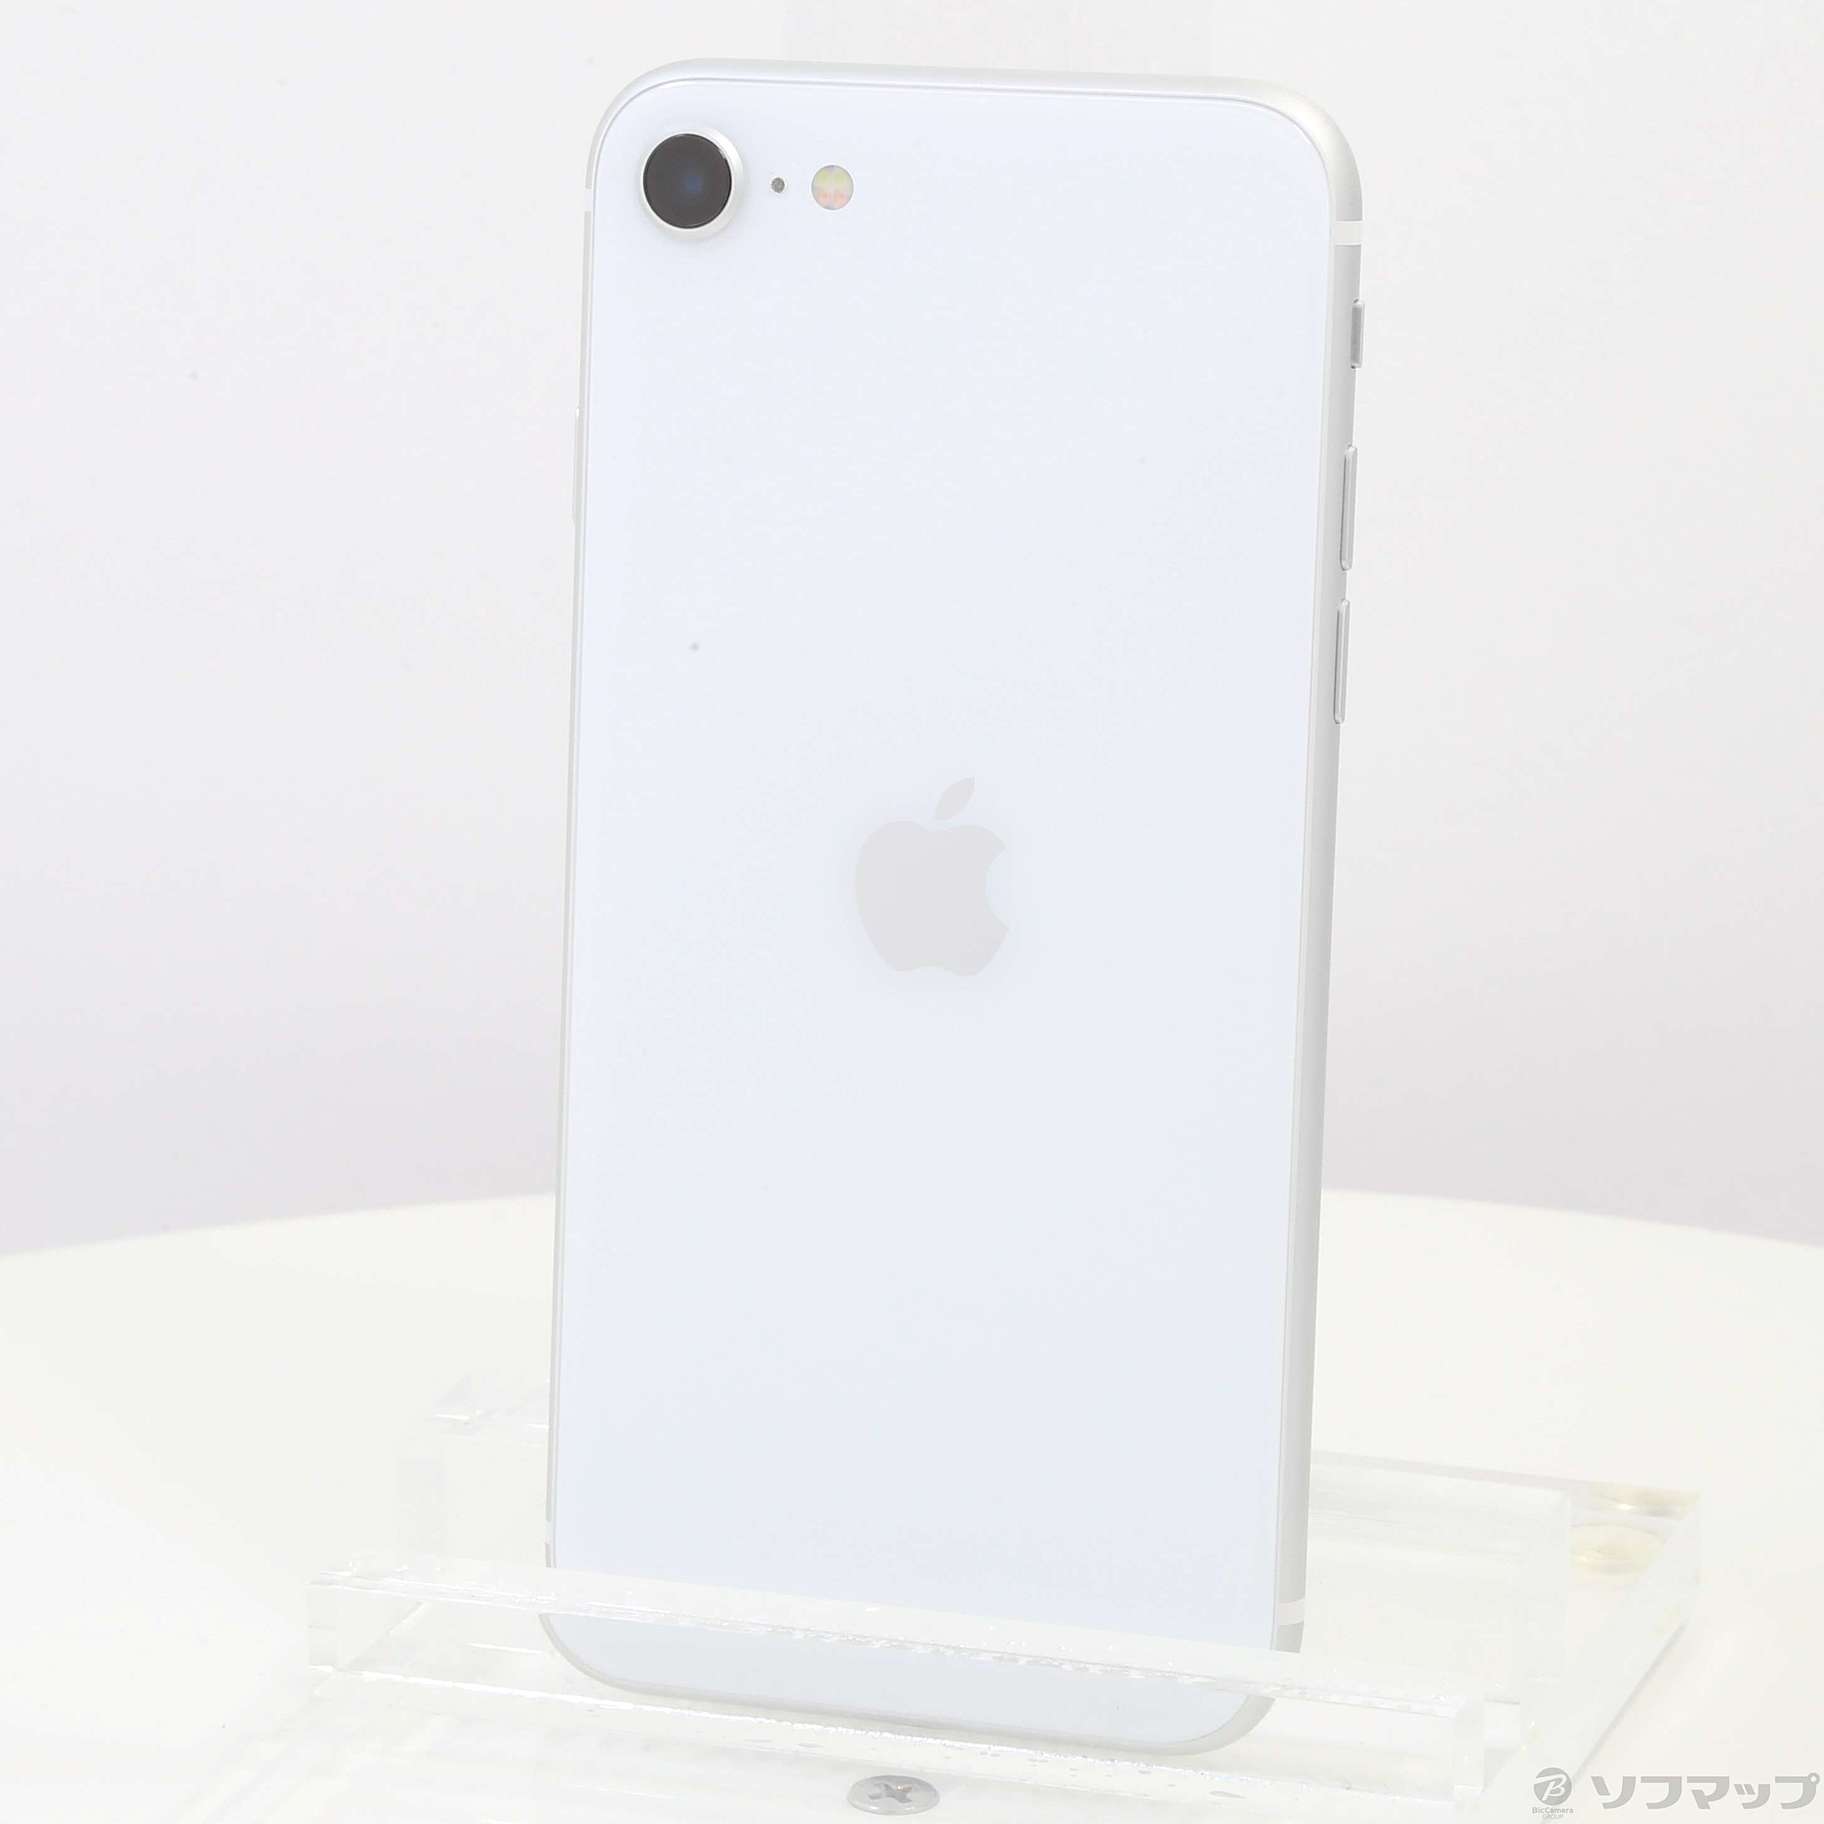 8,200円Apple iPhone SE 128GB 第2世代ホワイト